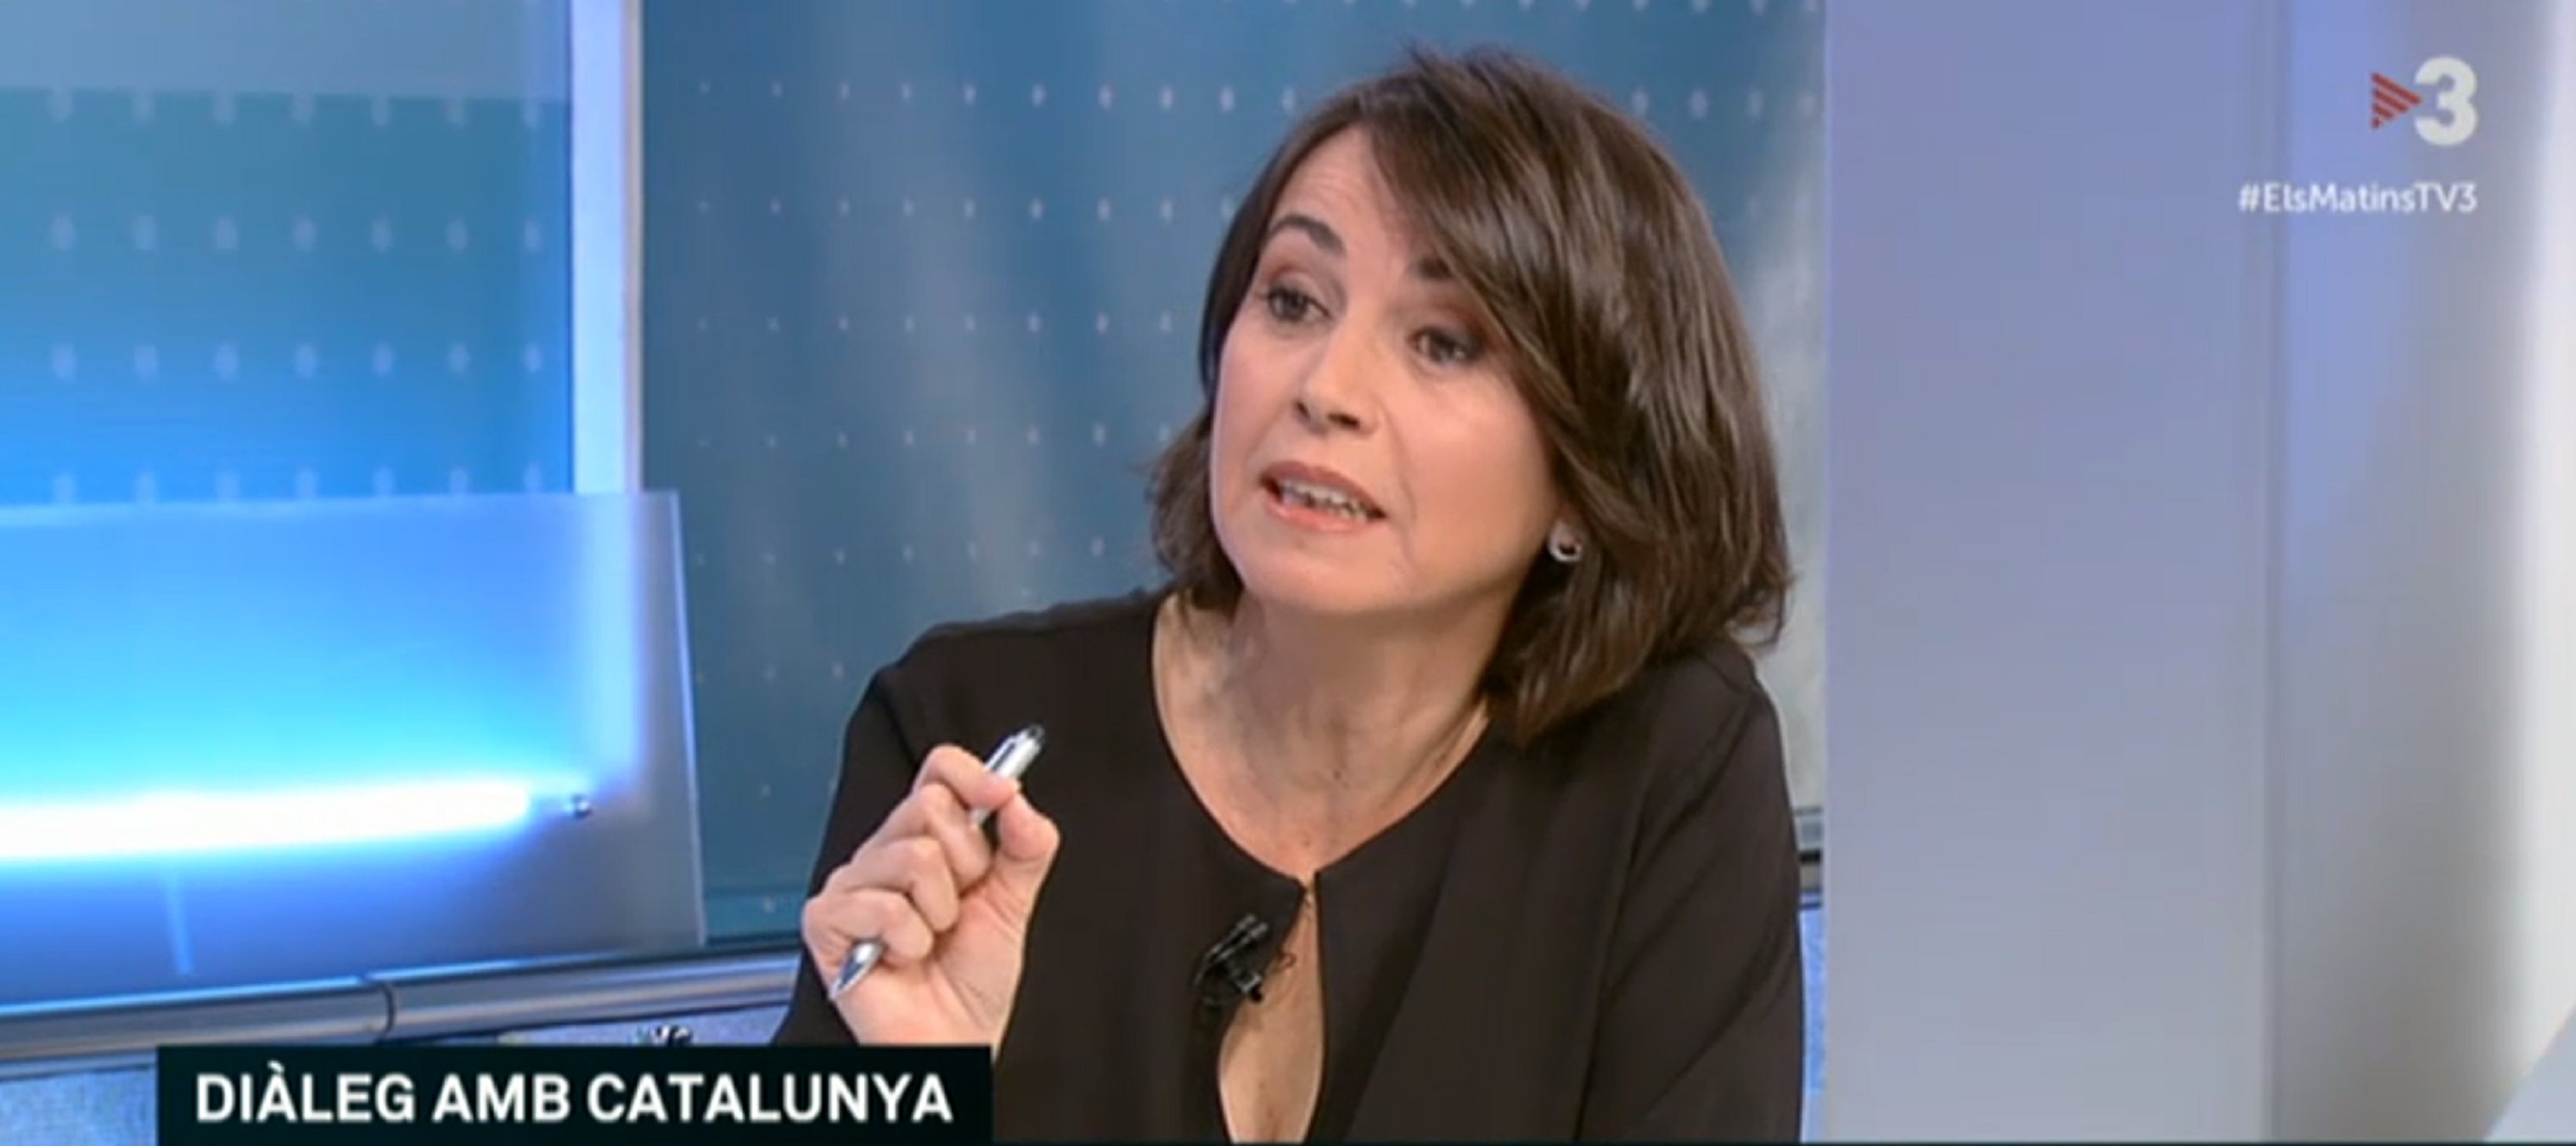 Cayetana: "TV3 es puerilidad y grosería" y Lídia Heredia responde contundente